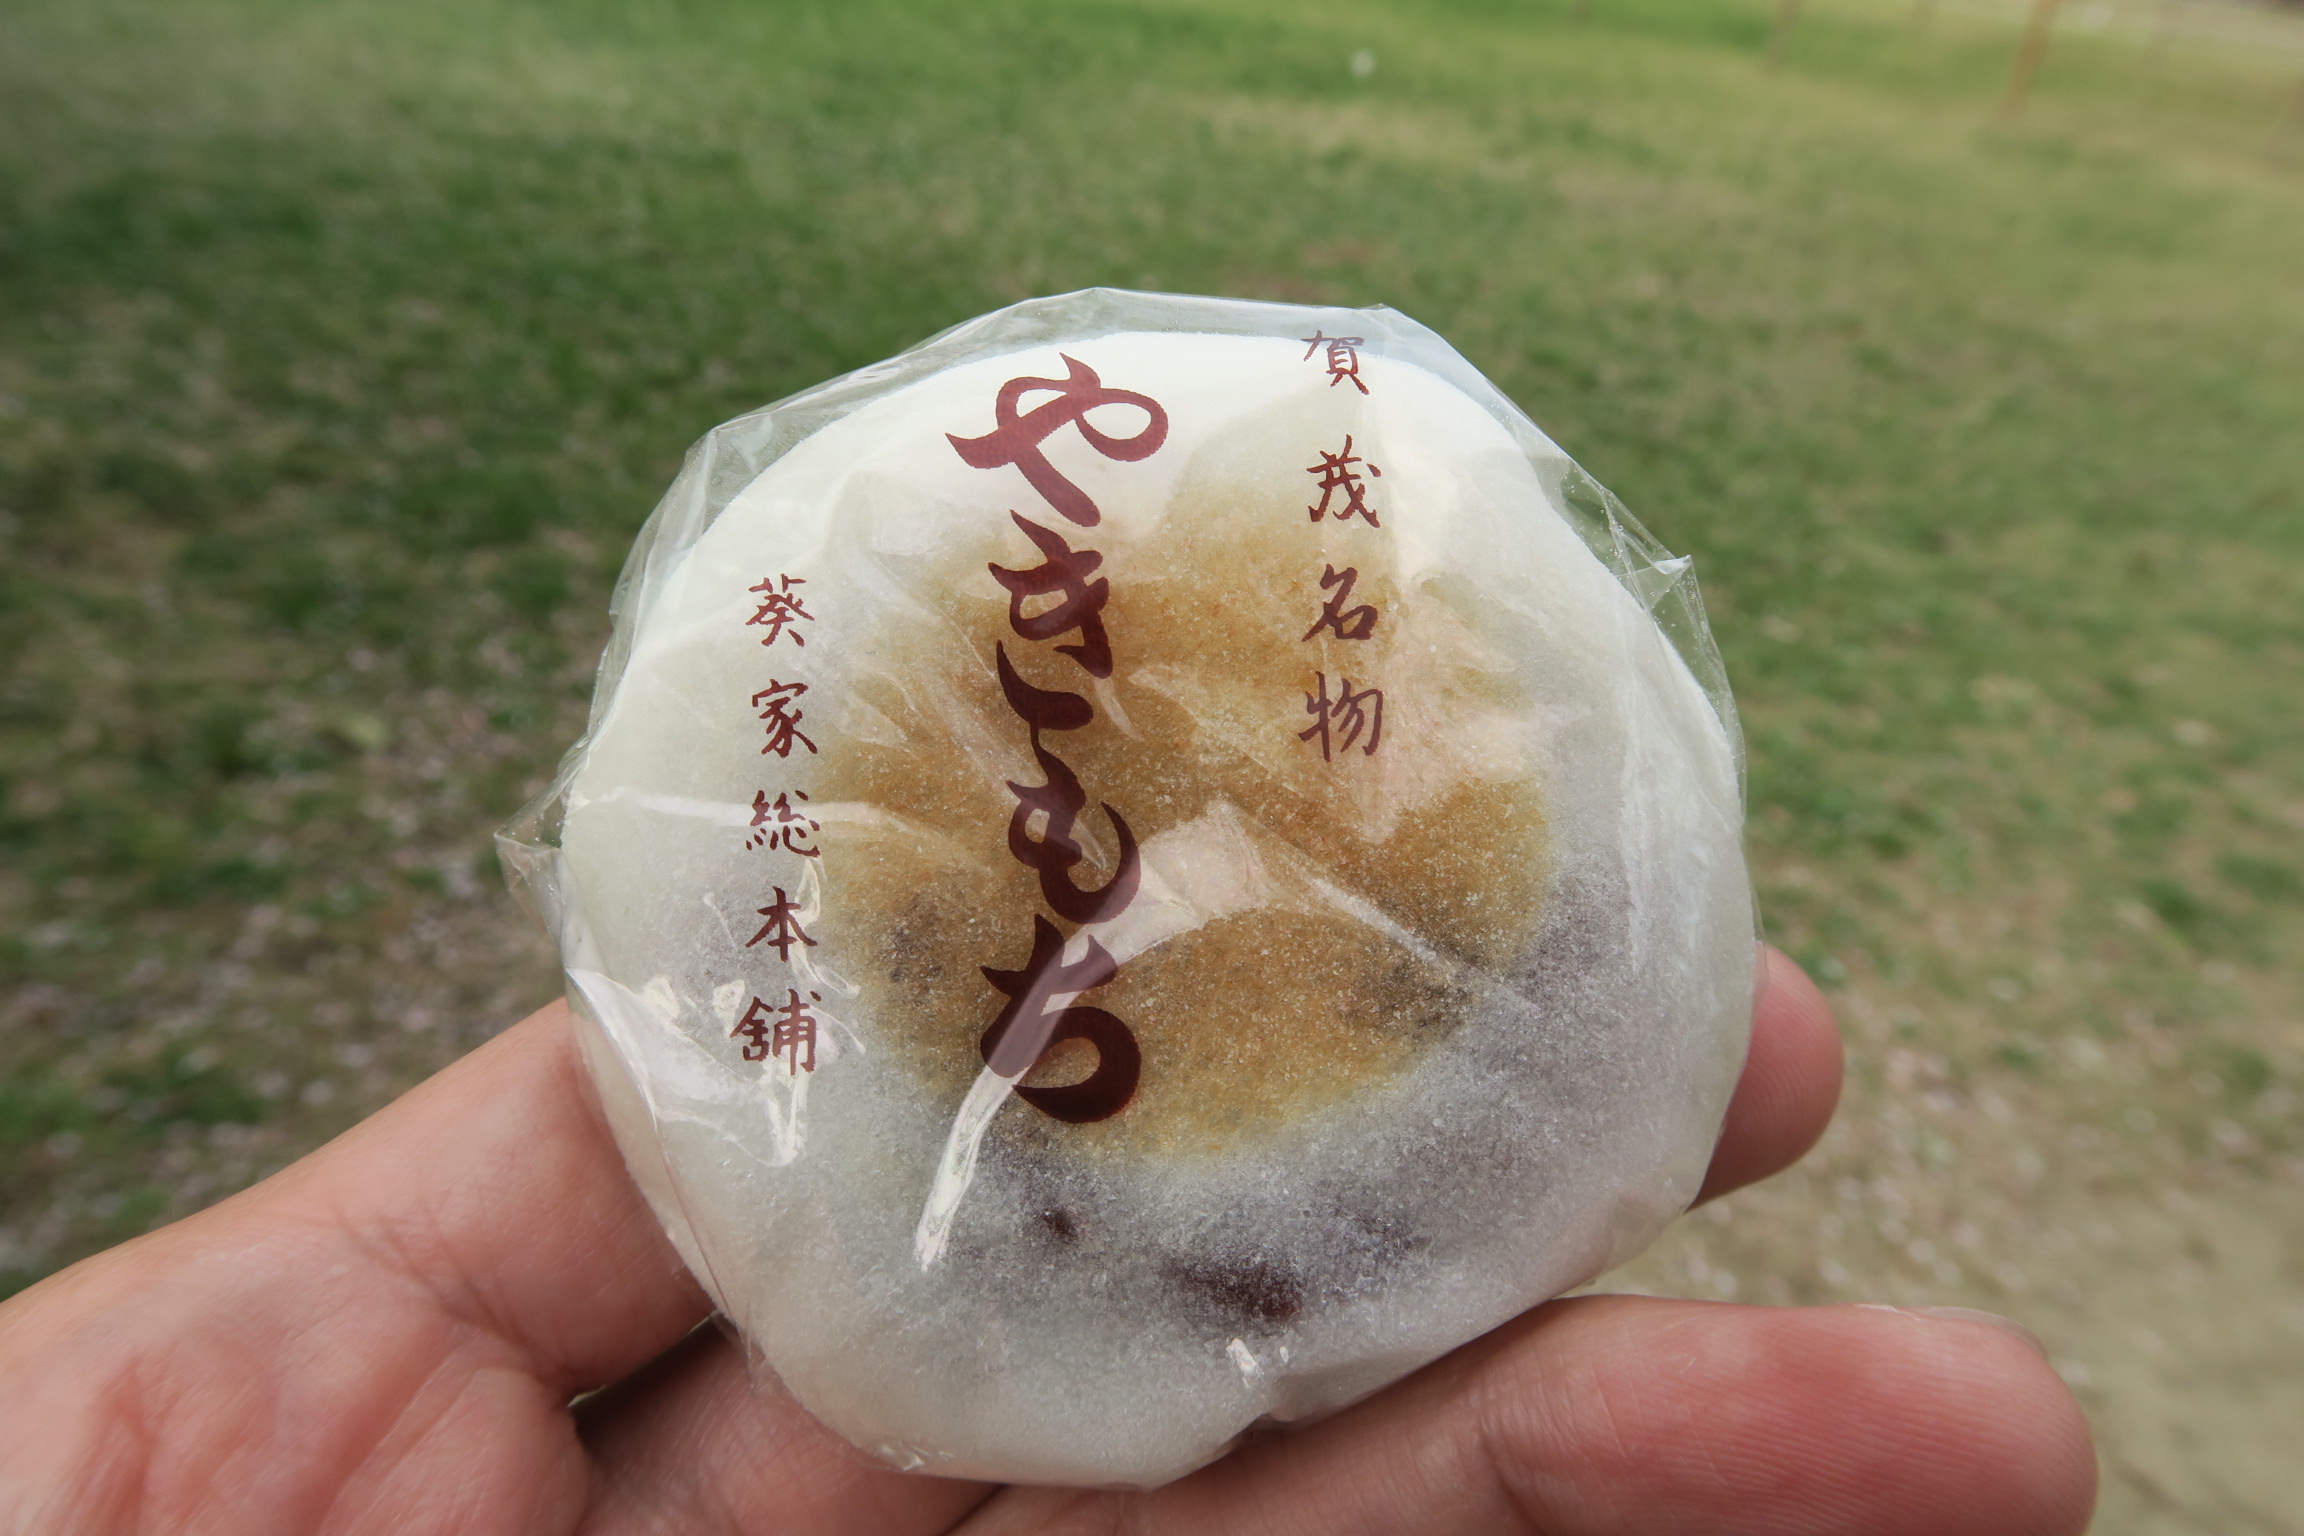 滋賀県江州米と北海道産小豆で作った「やきもち」。薄焼きで美味しいです。次回はよもぎを食べてみよ。